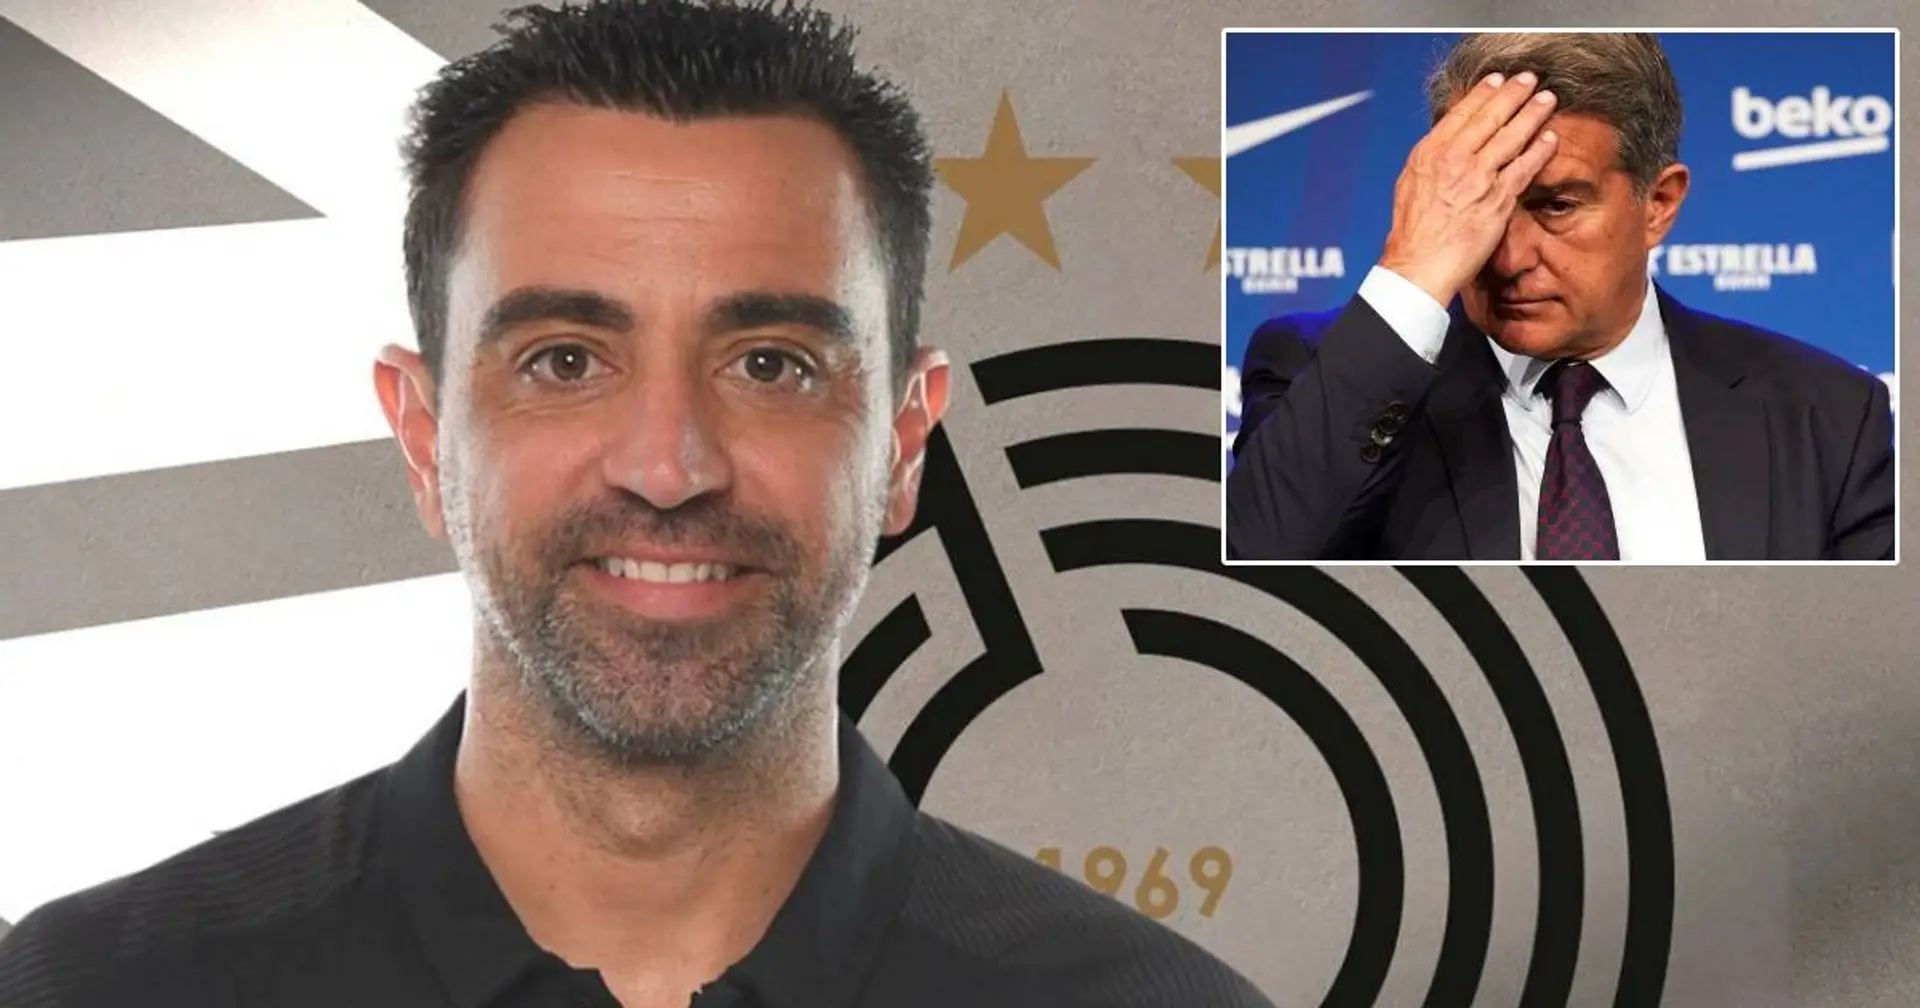 Wird Xavi der neue Barca-Trainer? So reagiert sein Klub Al-Sadd auf diese Gerüchte!